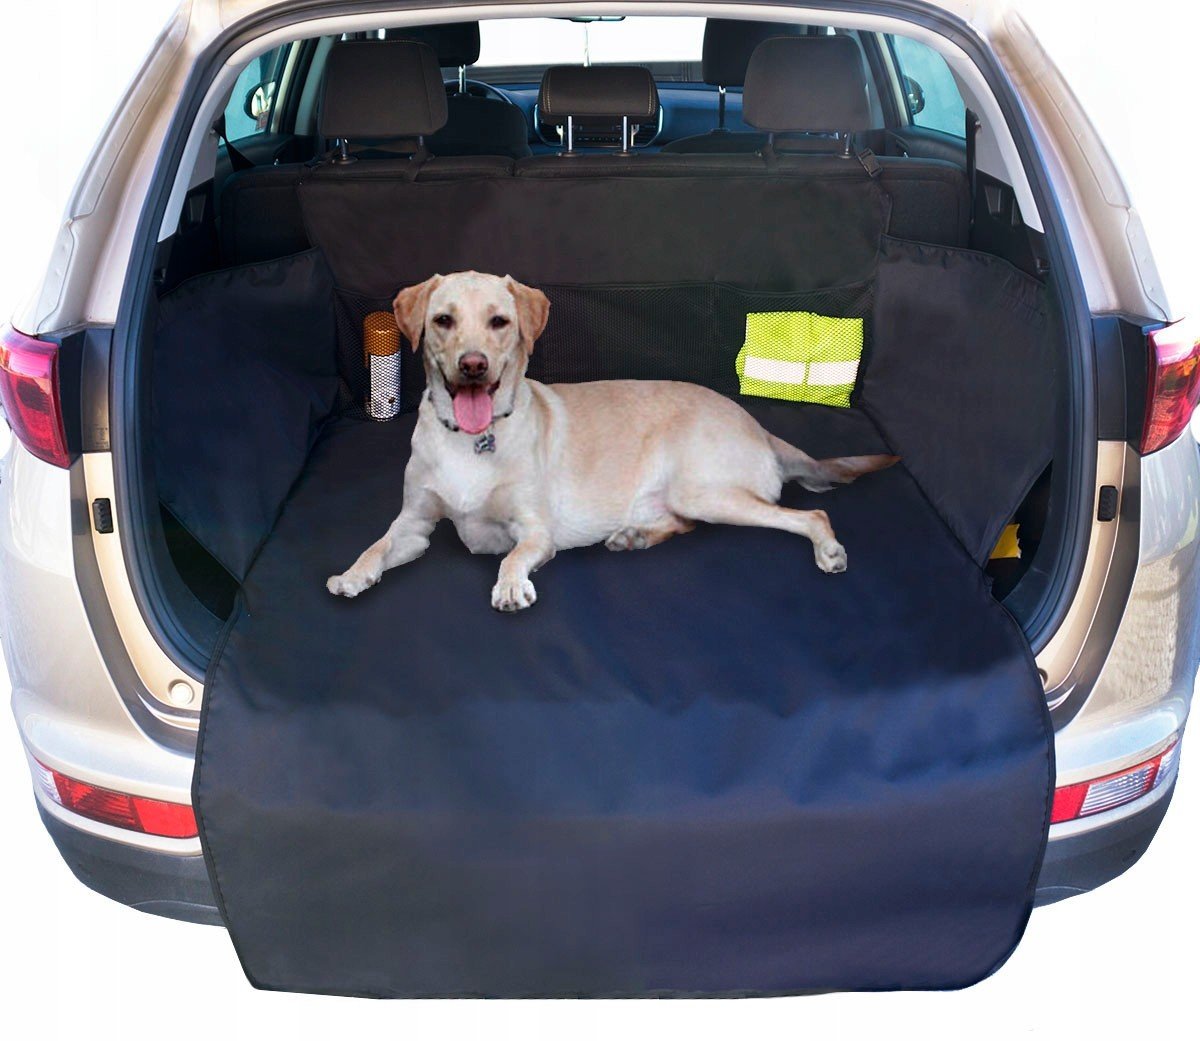 Potah Podložka do zavazadlového prostoru auta pro psa